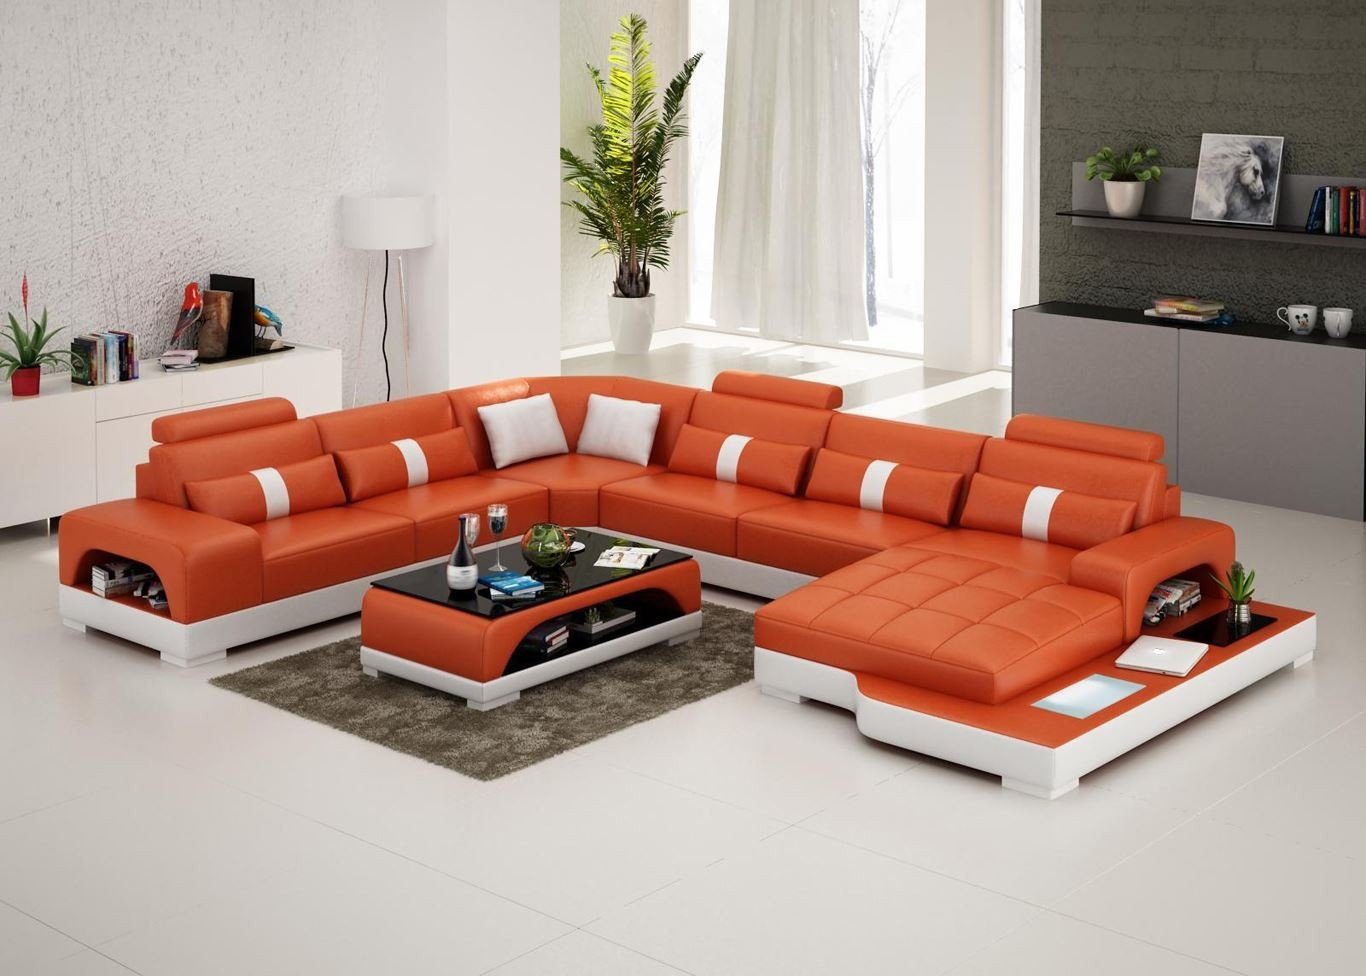 Zum niedrigsten Preis erhältlich JVmoebel Ecksofa, Couch Designer Polster Sofa mit Ecksofa Garnitur Orange Hocker